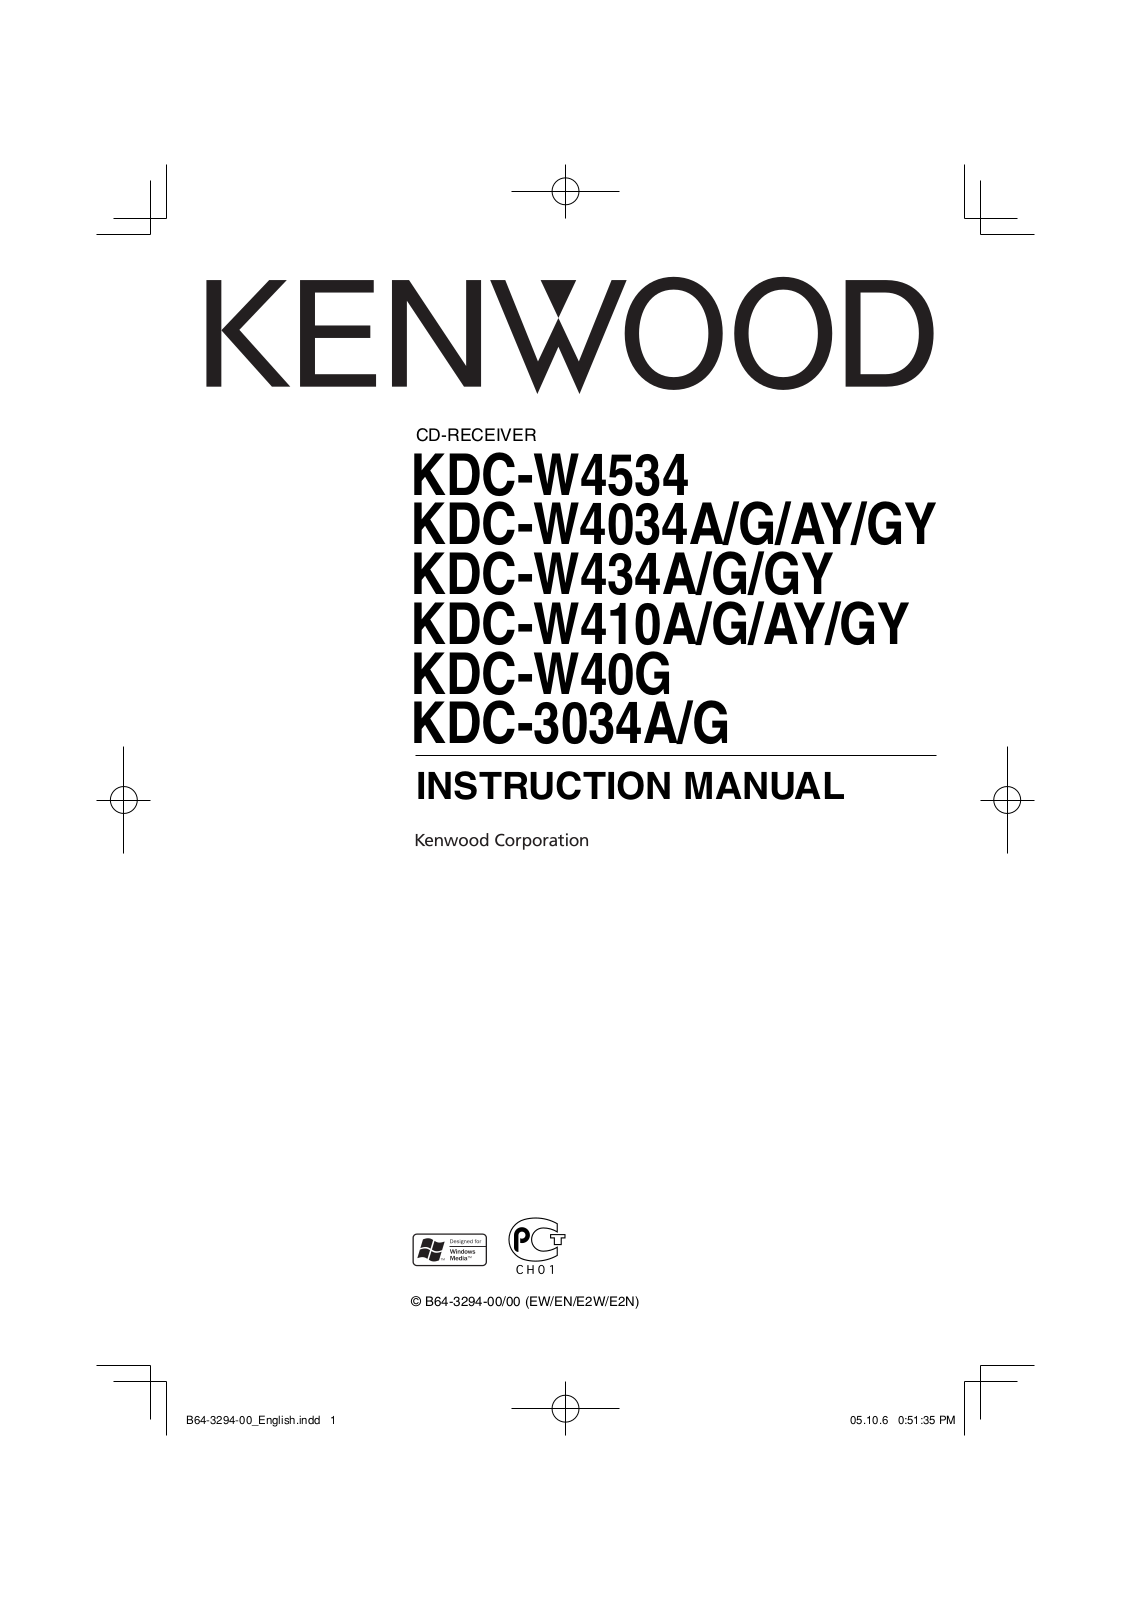 Kenwood KDCW-4034-AY, KDCW-4034-G, KDCW-4034-GY, KDCW-410-AY, KDCW-410-G Owners manual